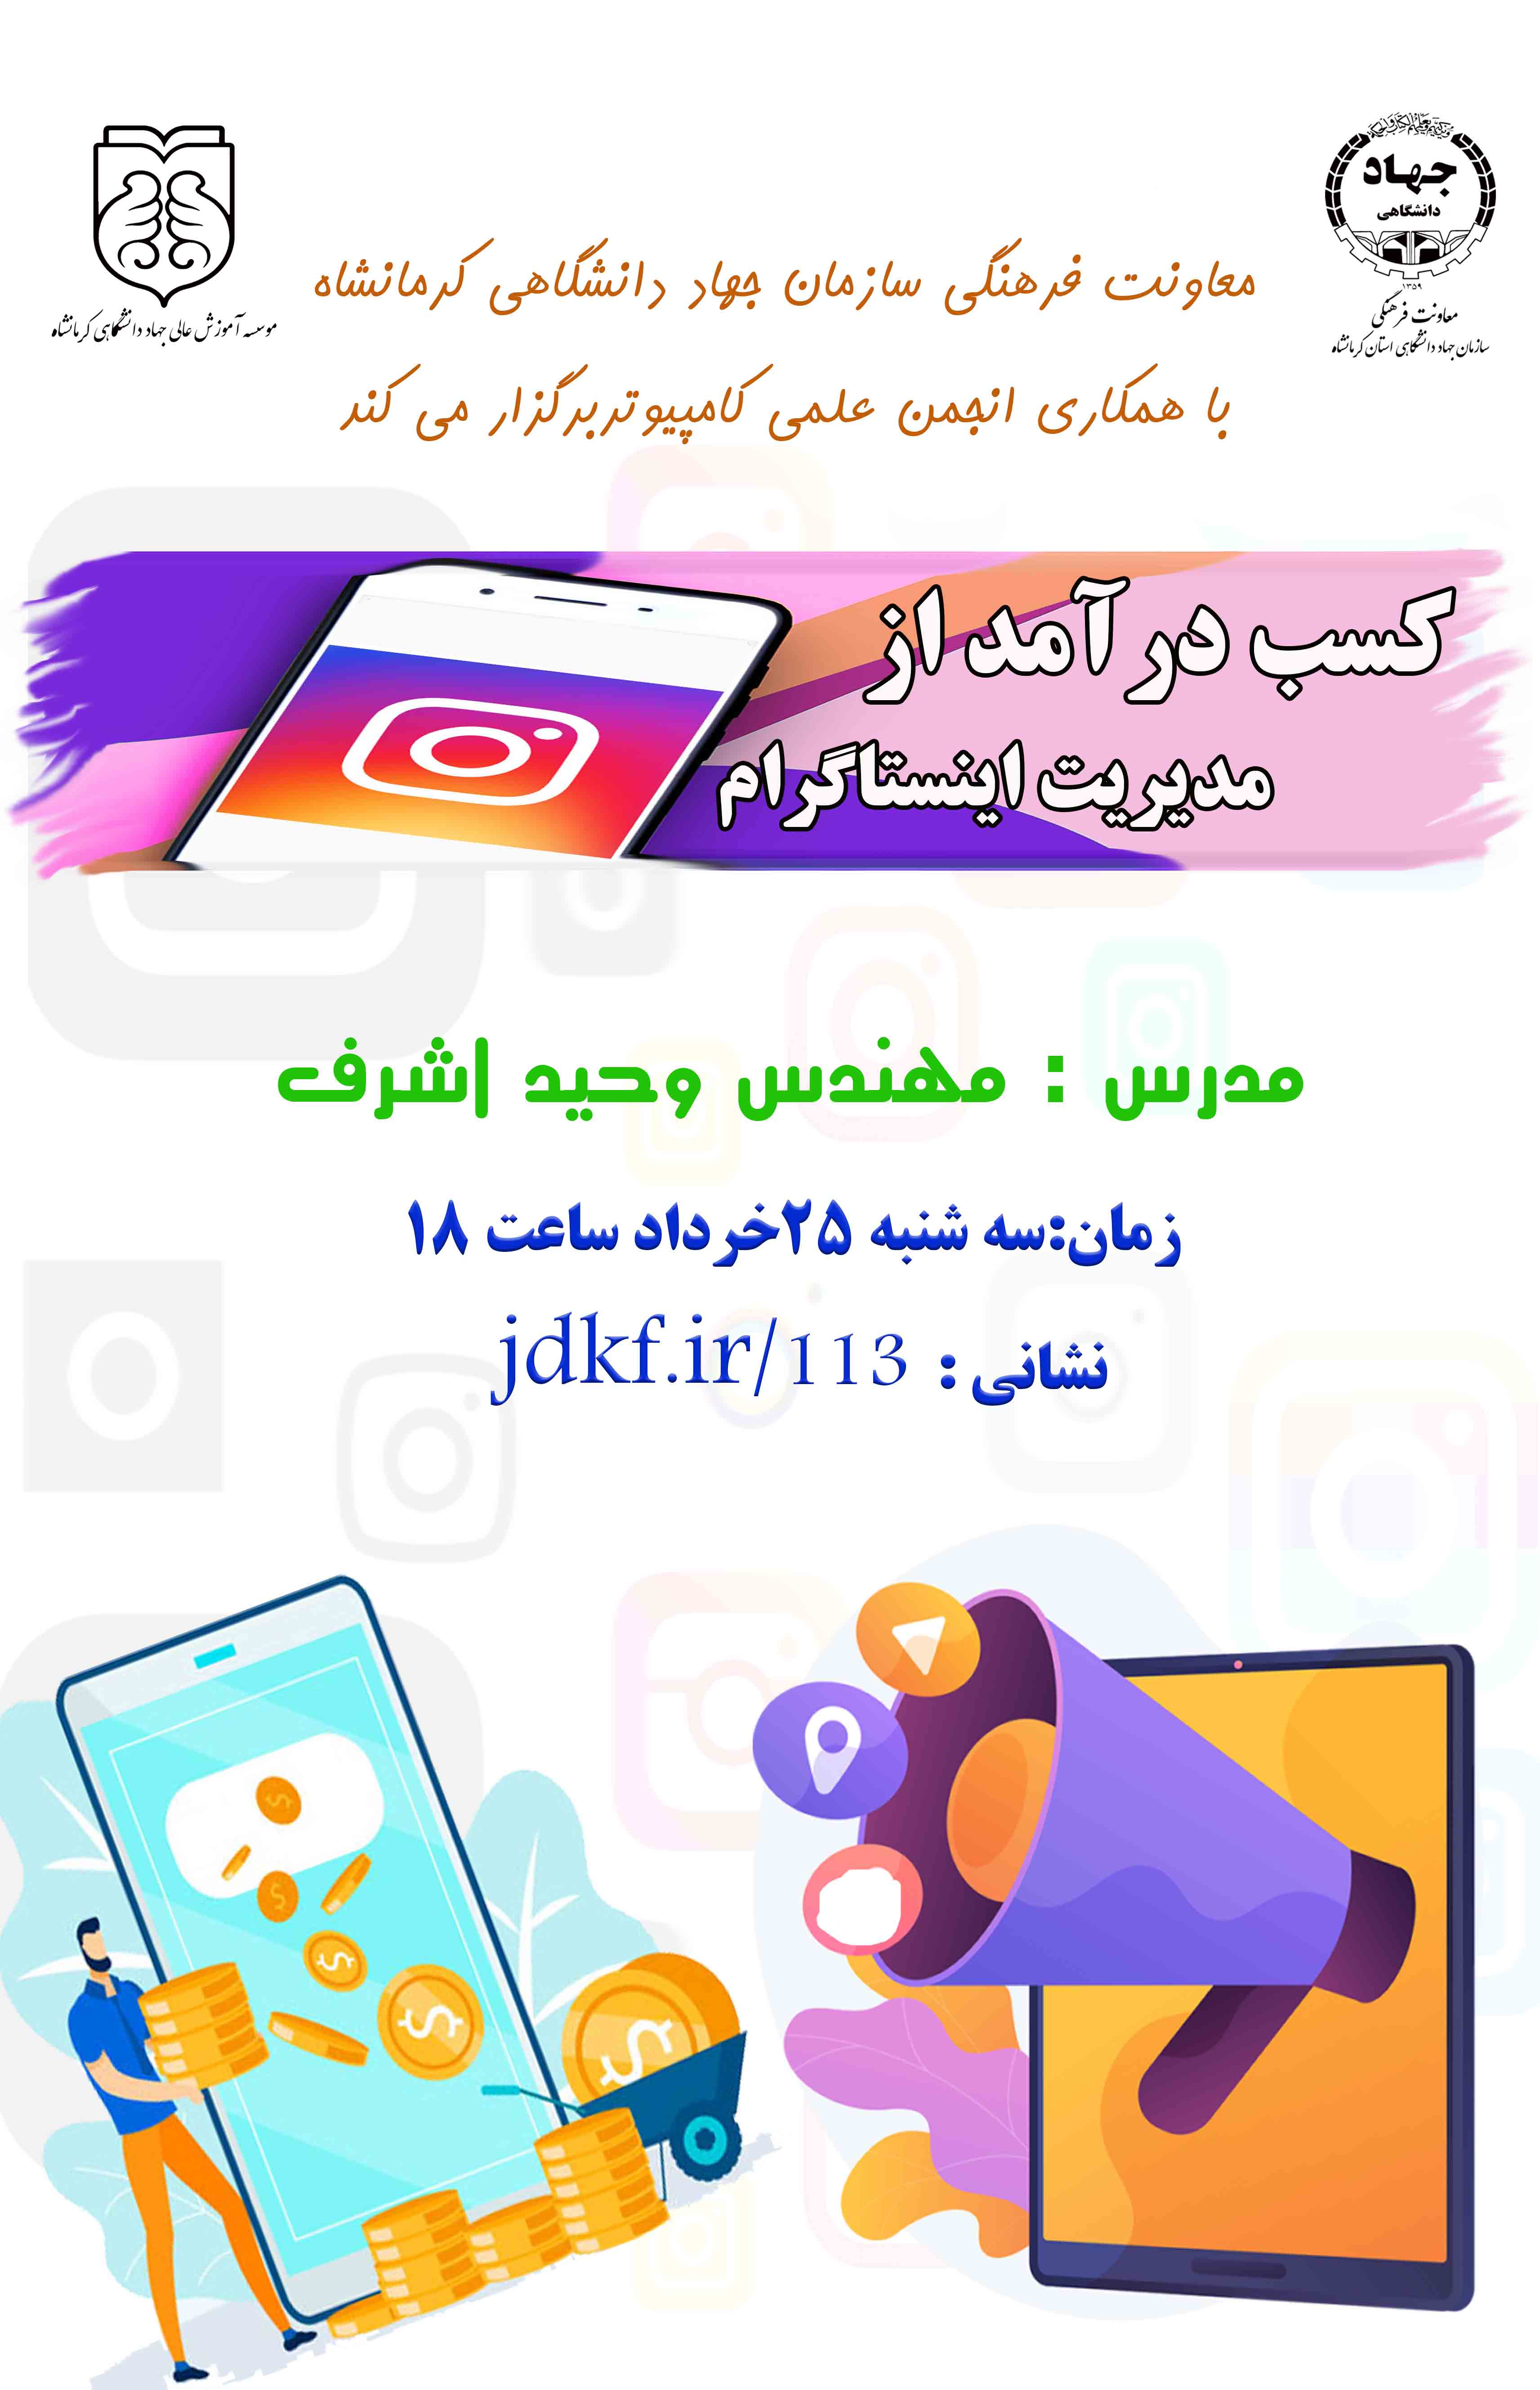 وبینار " کسب درآمد از مدیریت اینستاگرام"